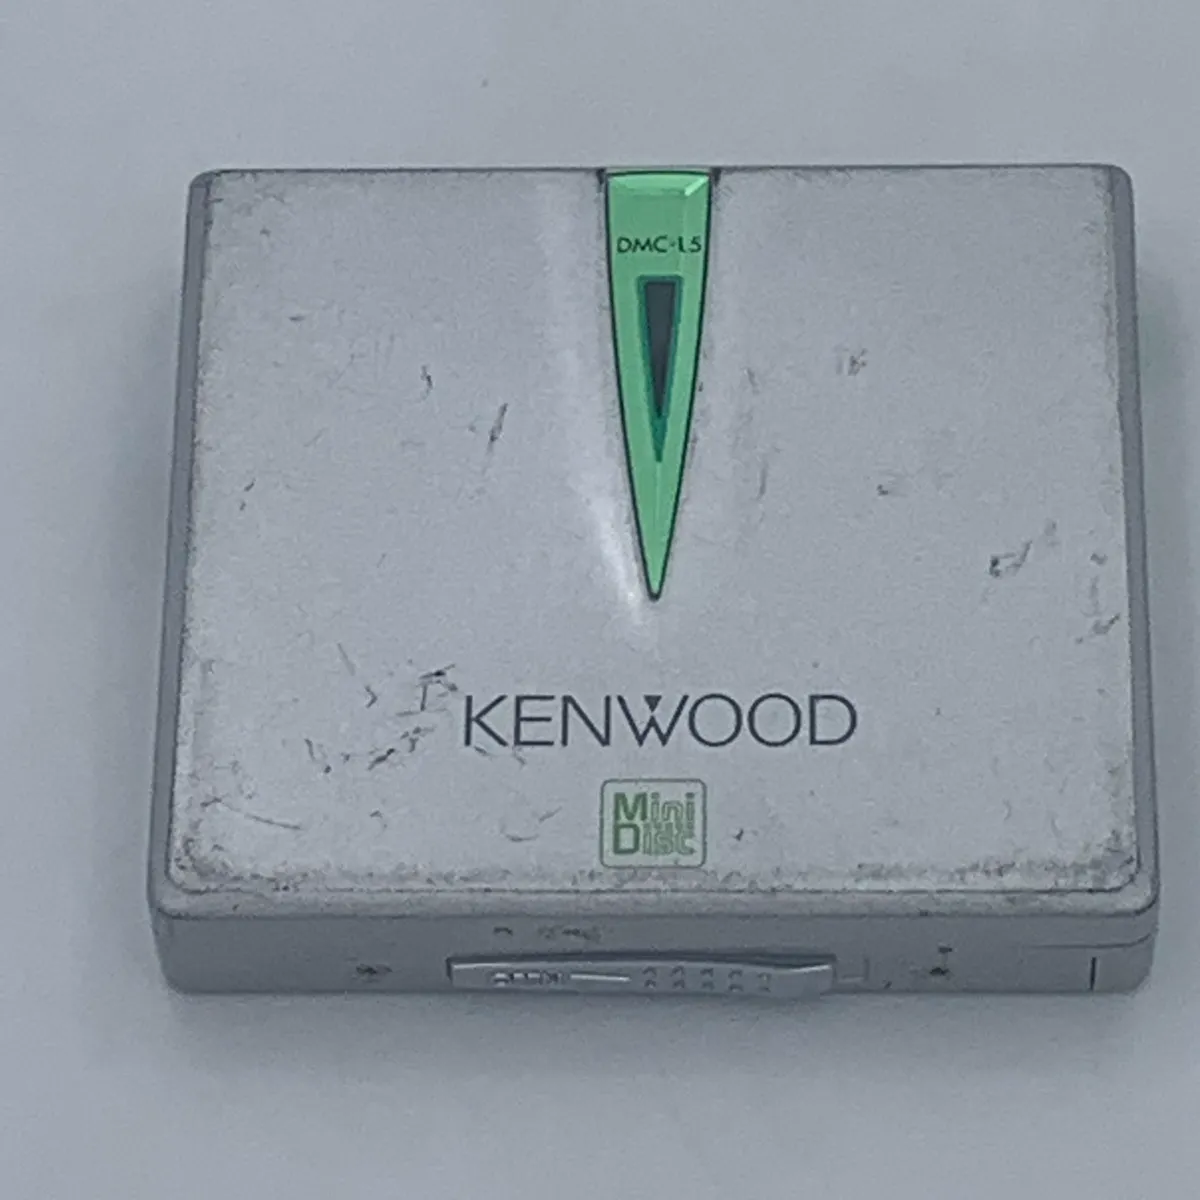 KENWOOD DMC-L5